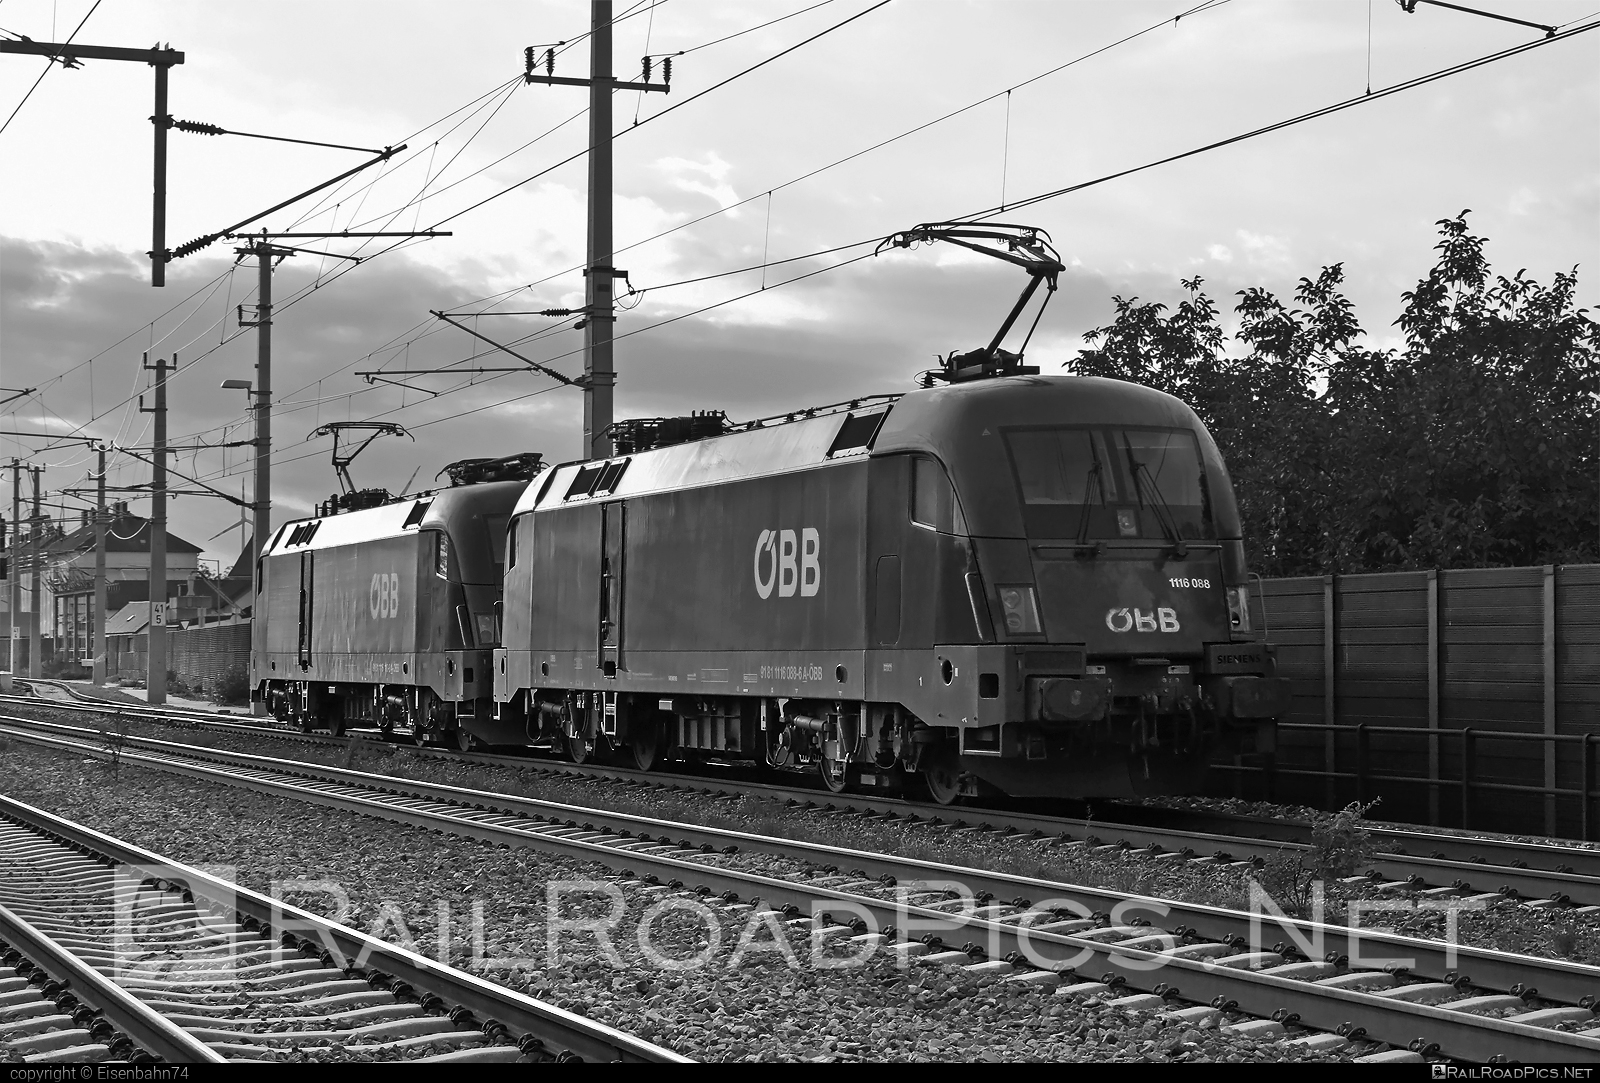 Siemens ES 64 U2 - 1116 088 operated by Rail Cargo Austria AG #es64 #es64u2 #eurosprinter #obb #osterreichischebundesbahnen #rcw #siemens #siemensEs64 #siemensEs64u2 #siemenstaurus #taurus #tauruslocomotive